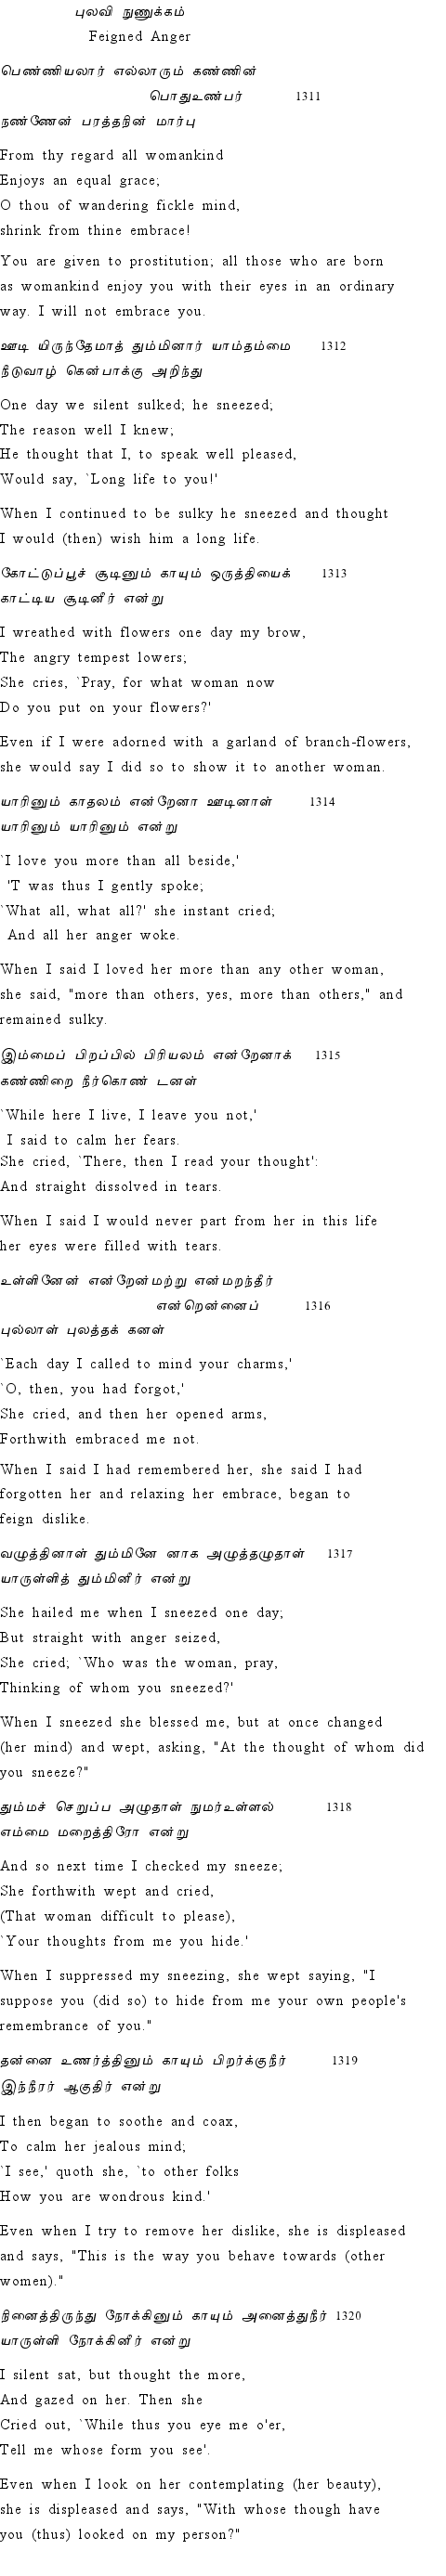 Text of Adhikaram 132